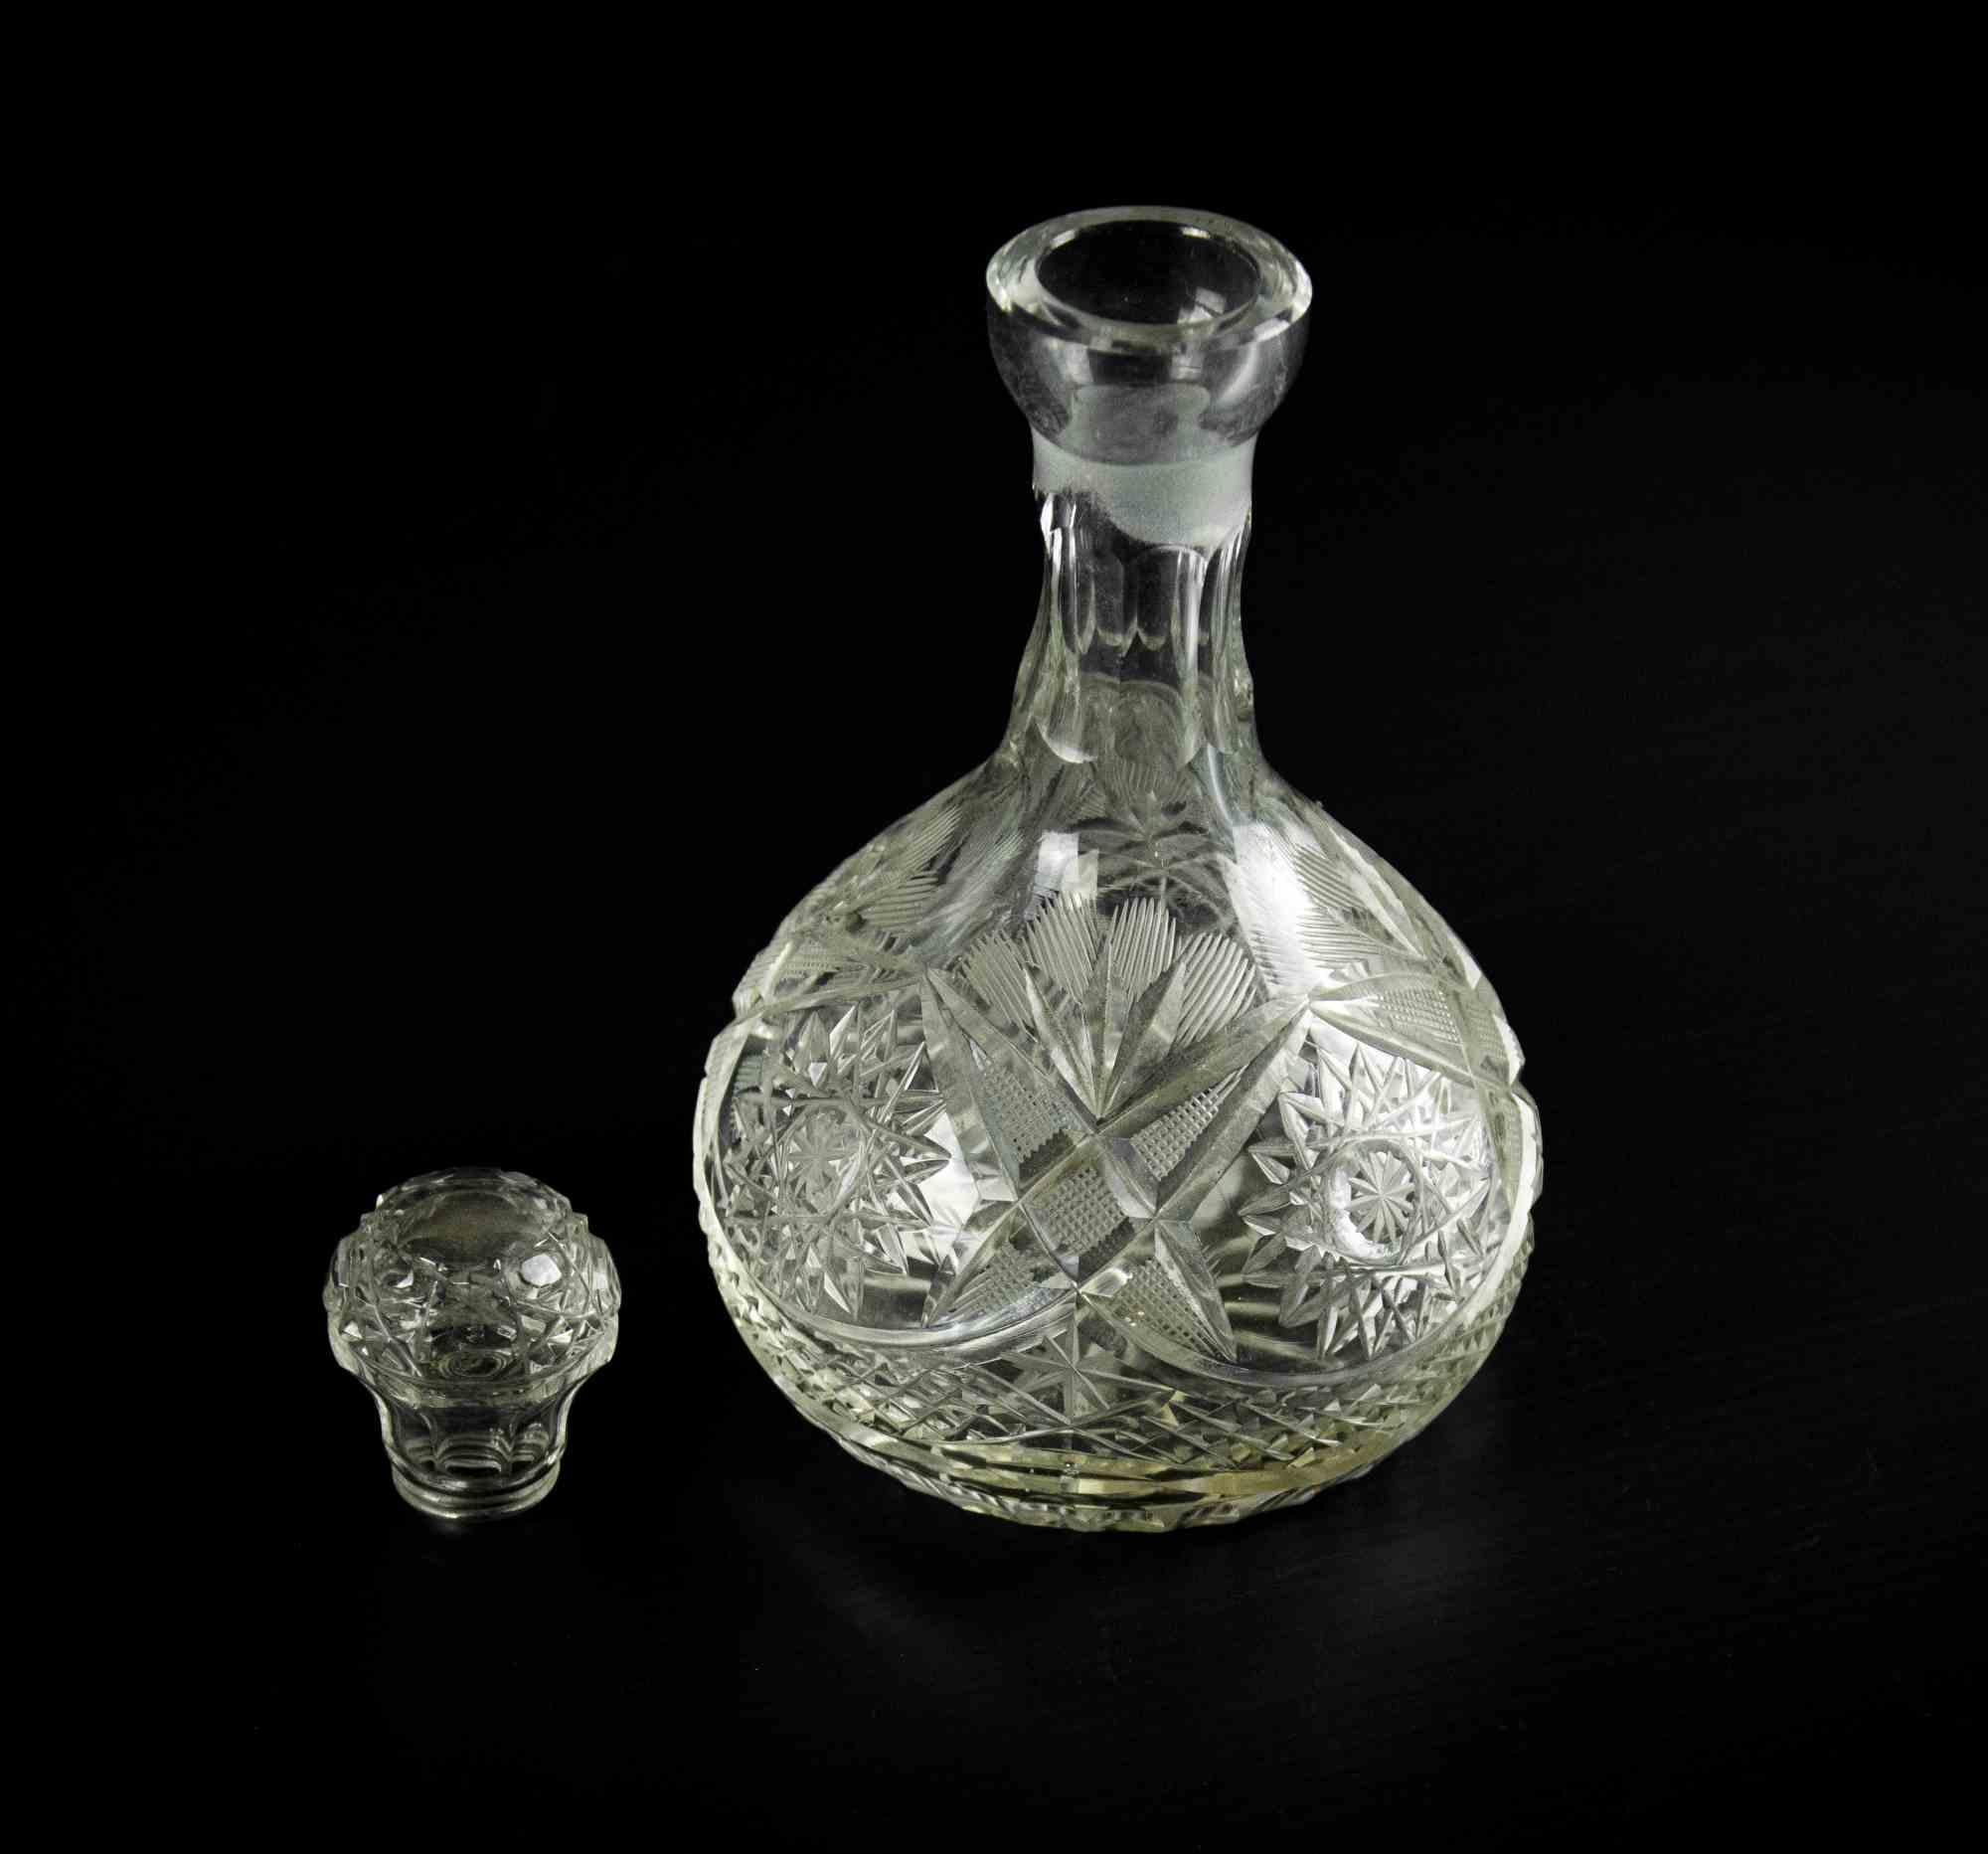 La bouteille de liqueur en verre est un objet décoratif original réalisé dans les années 1970.

Une belle petite bouteille en verre avec un bouchon et une décoration élégante sur la surface du verre.

Bonnes conditions.